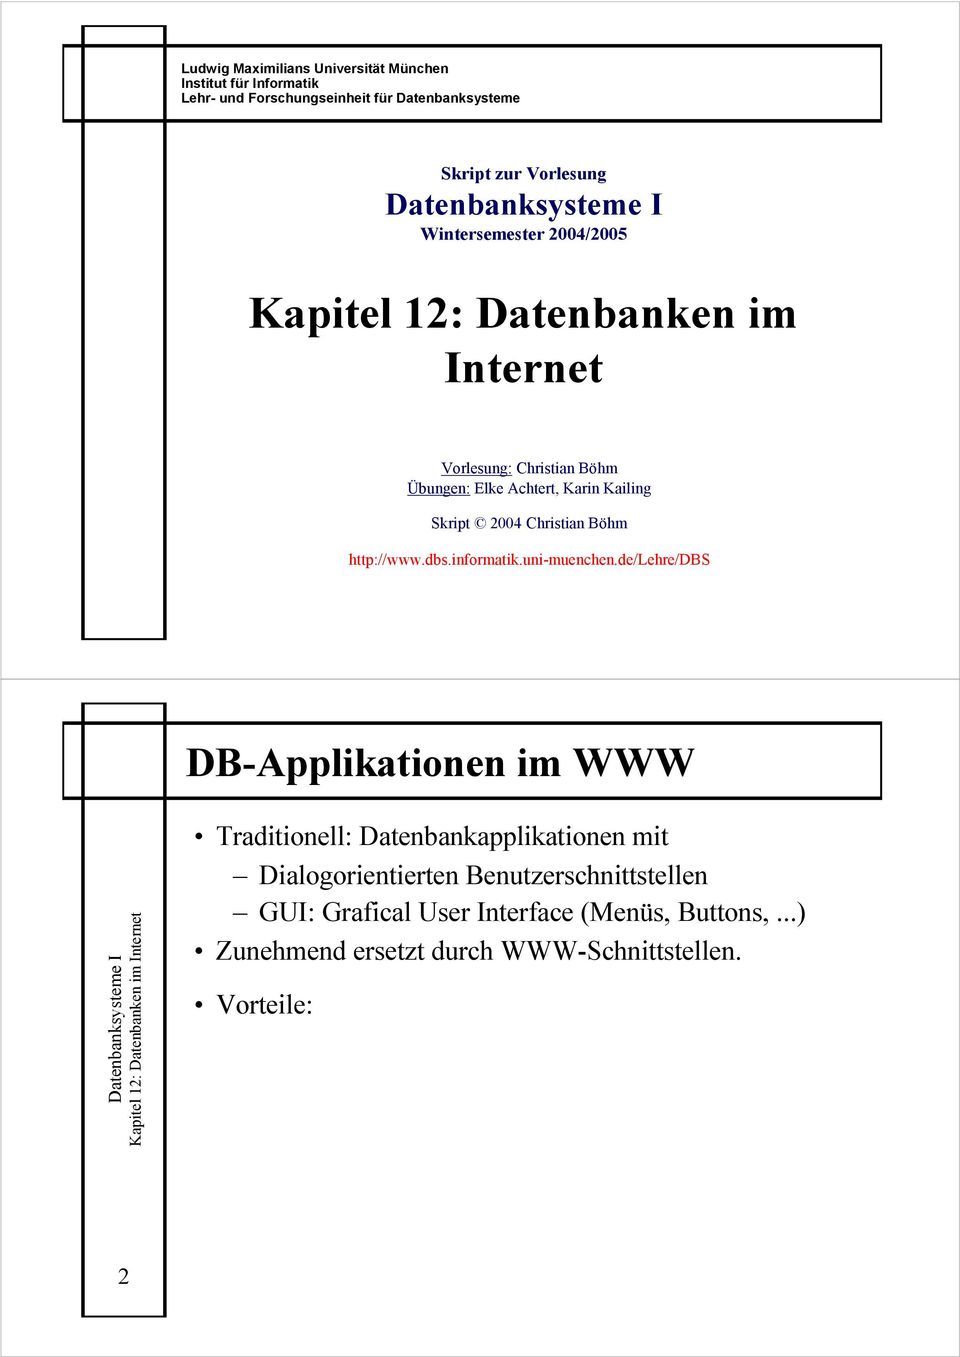 de/lehre/dbs DB-Applikationen im WWW 2 Traditionell: Datenbankapplikationen mit Dialogorientierten Benutzerschnittstellen GUI: Grafical User Interface (Menüs, Buttons,.